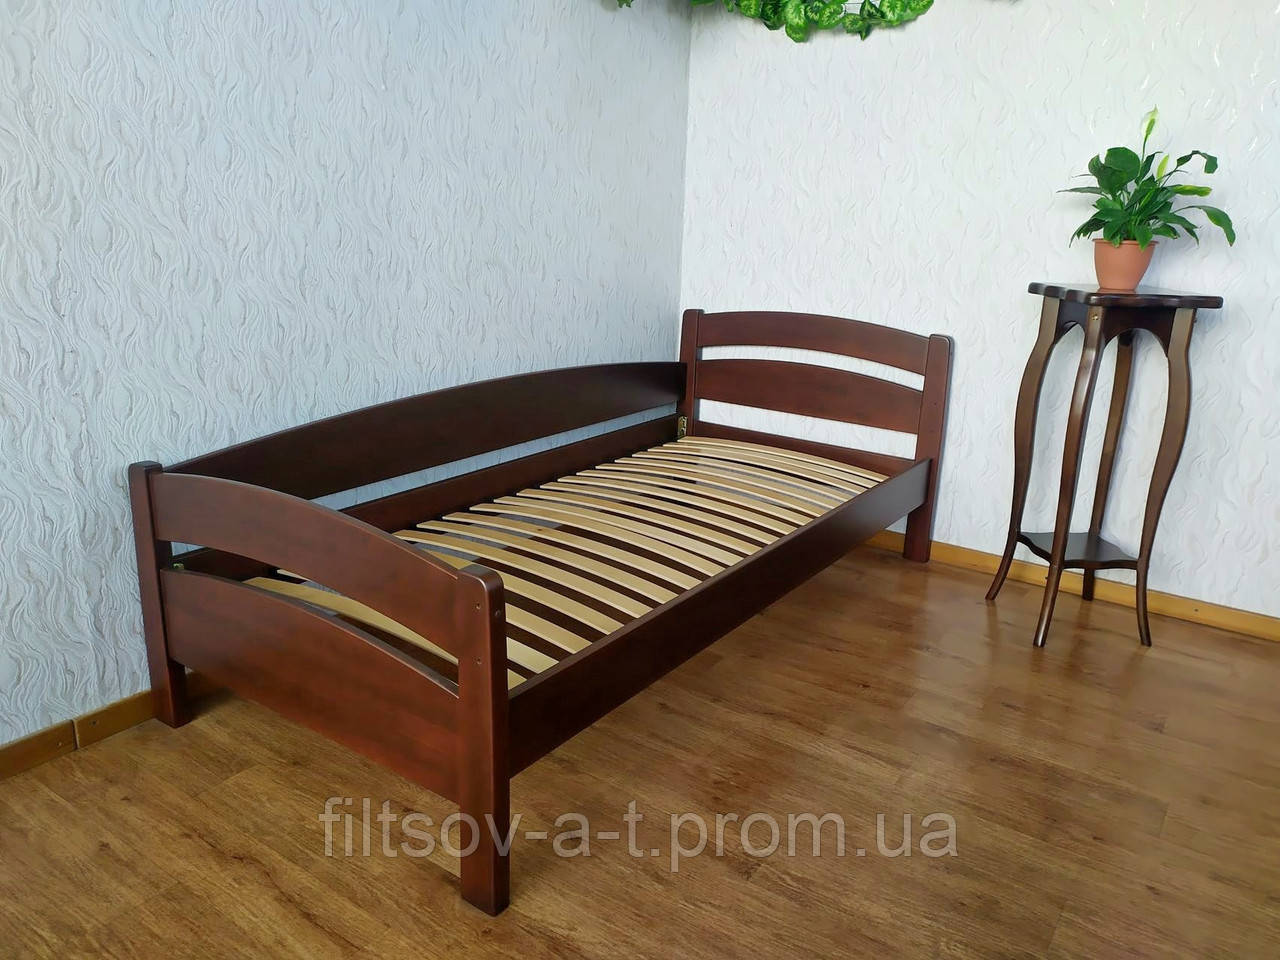 Кутове односпальне дерев'яне ліжко з натурального дерева від виробника "Марта"